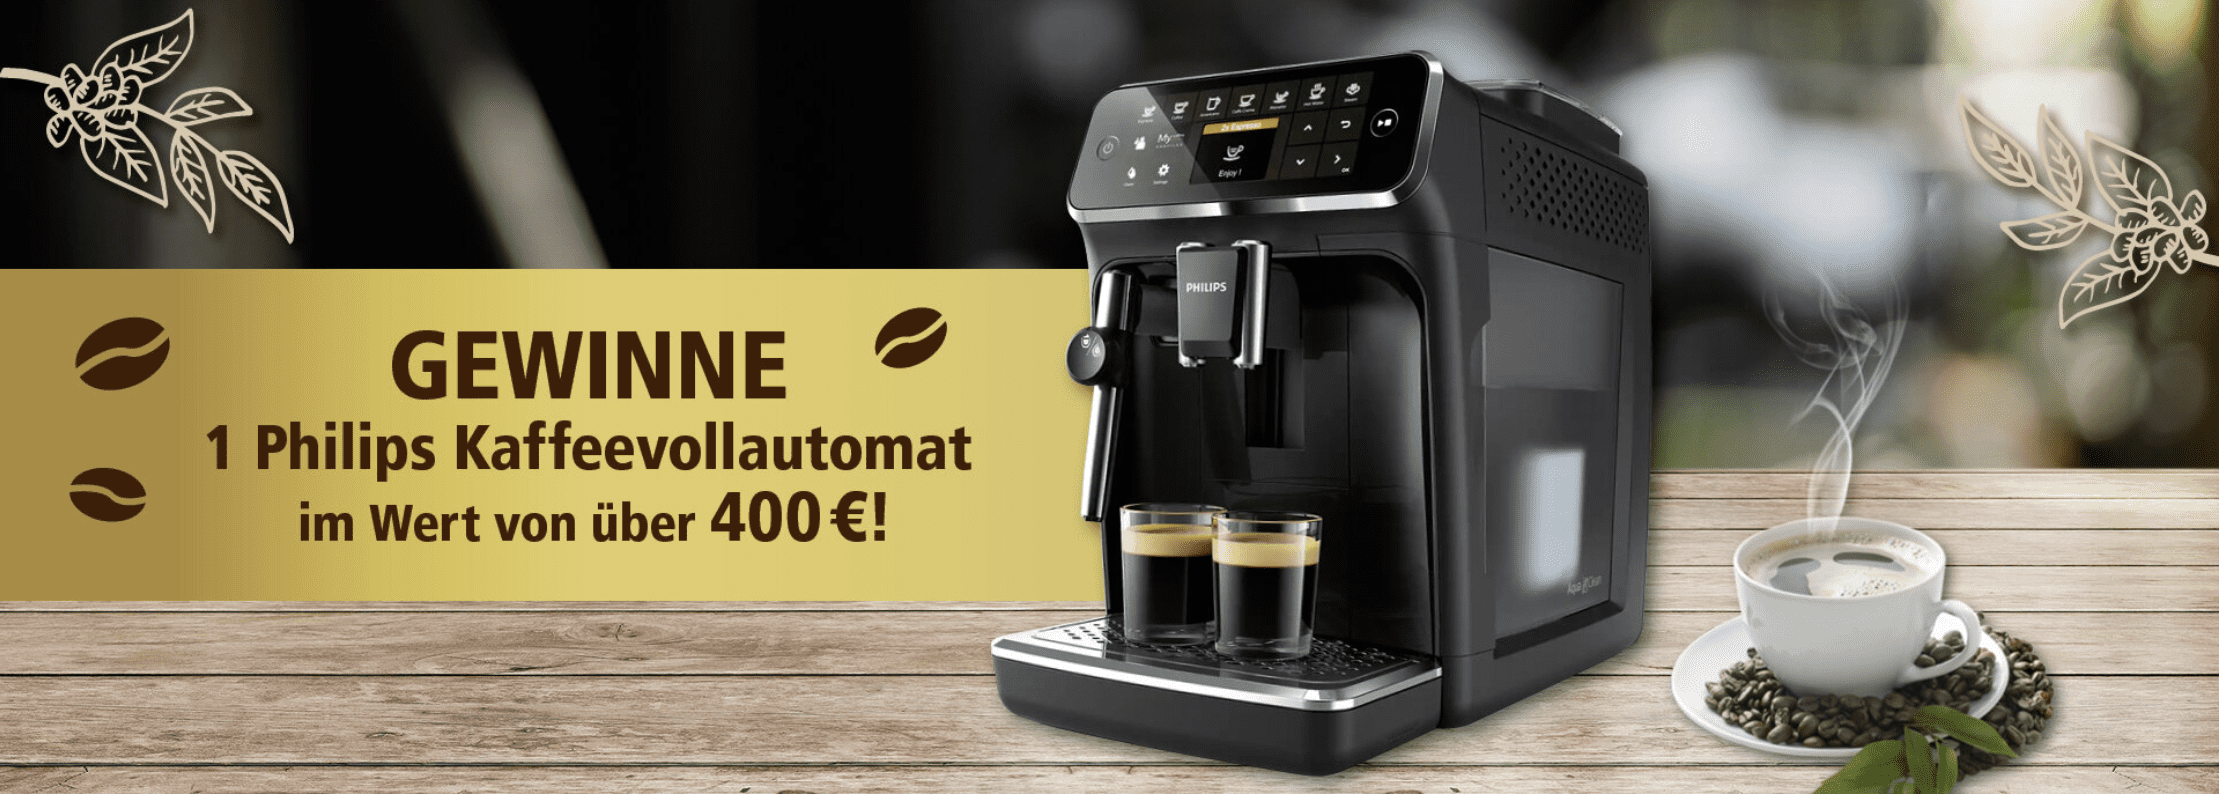 case_Selgros Gewinnspiel_Kaffeeautomat zu gewinnen